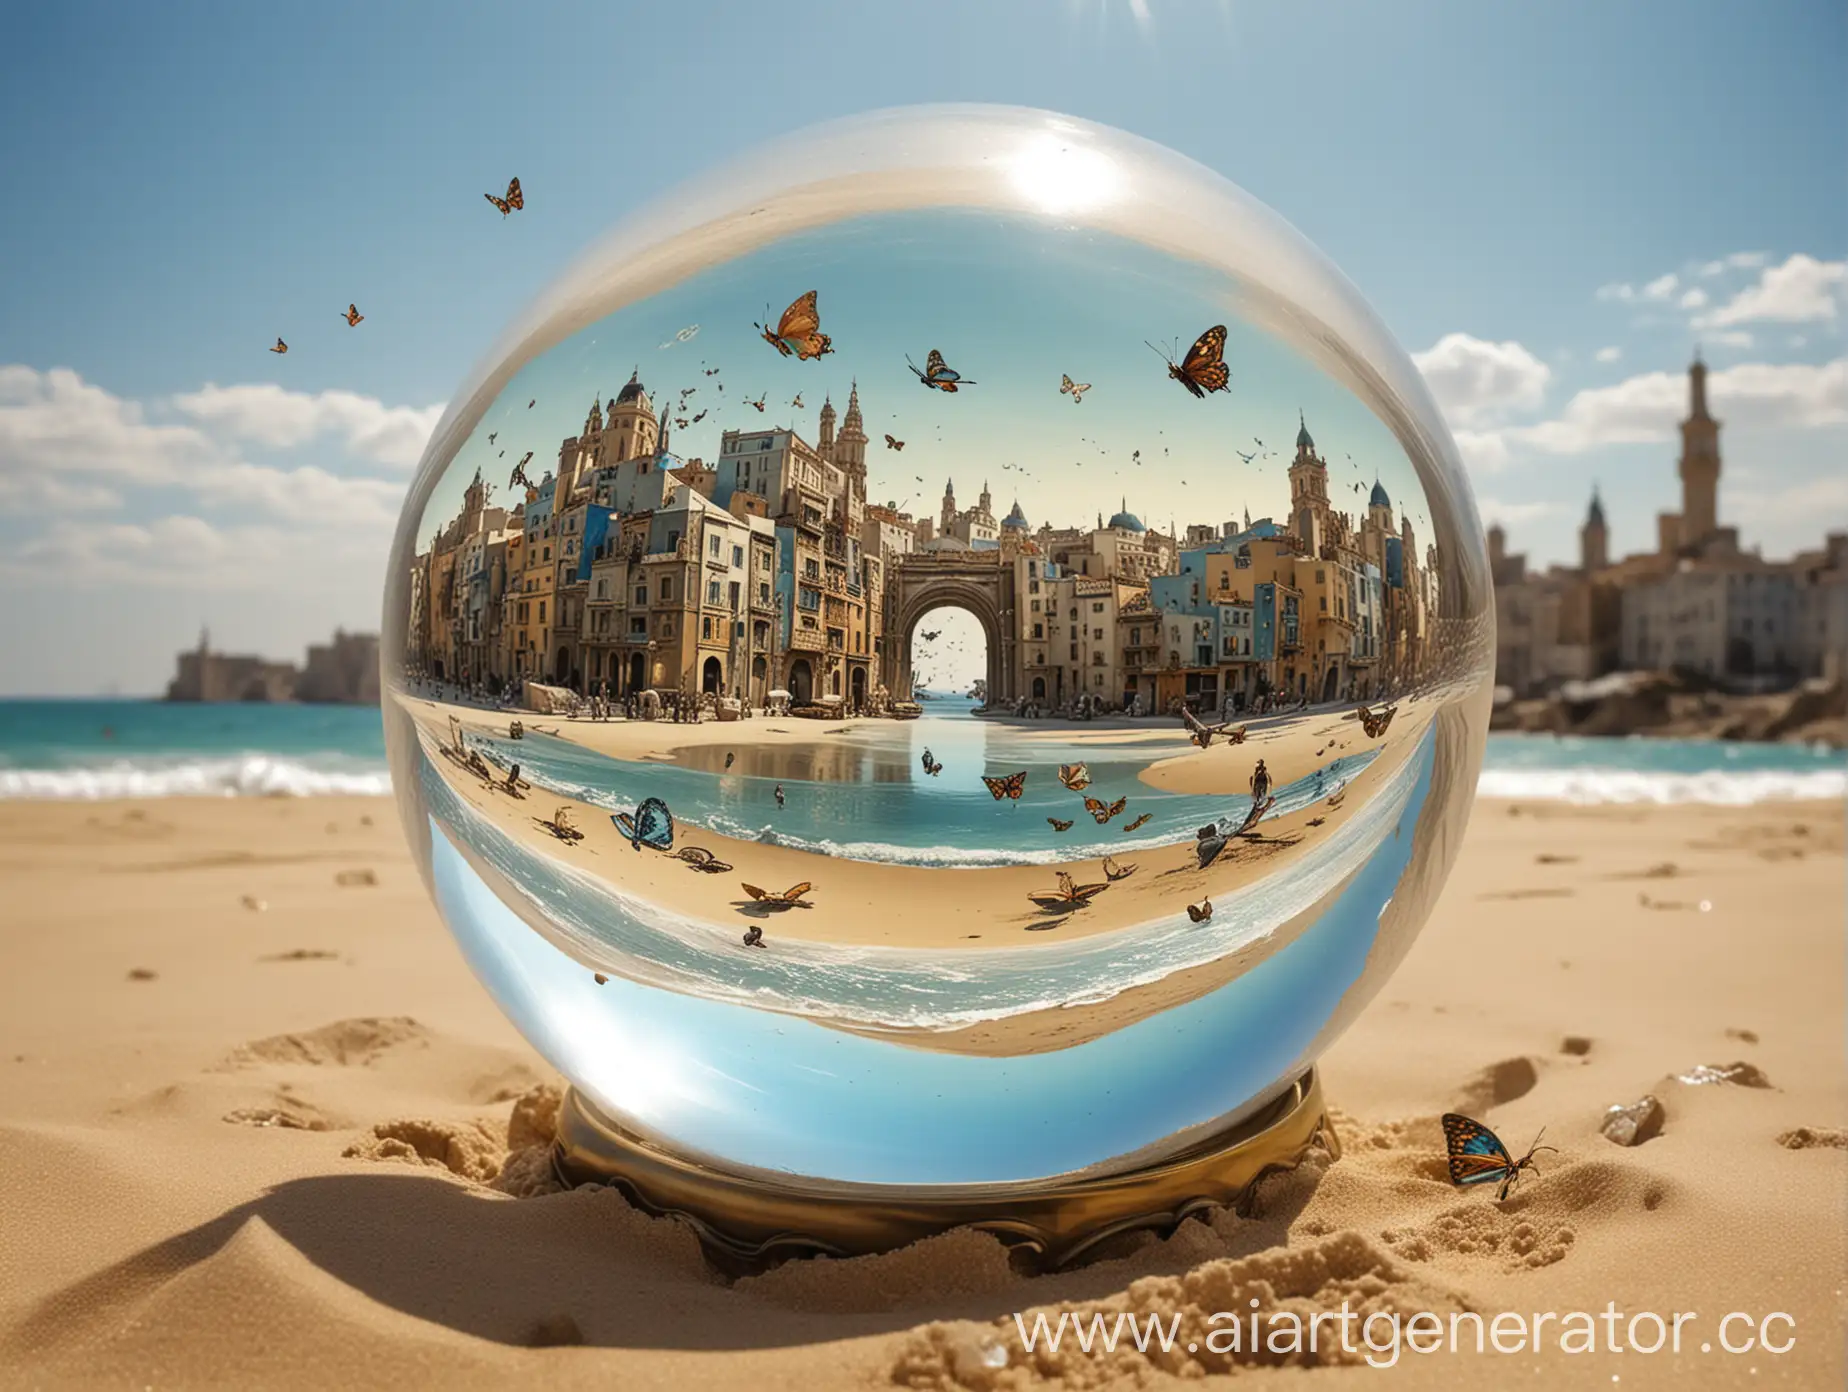 Картина в стиле Сальвадора Дали Море песок хрустальнвй шар бабочки летят город вдали